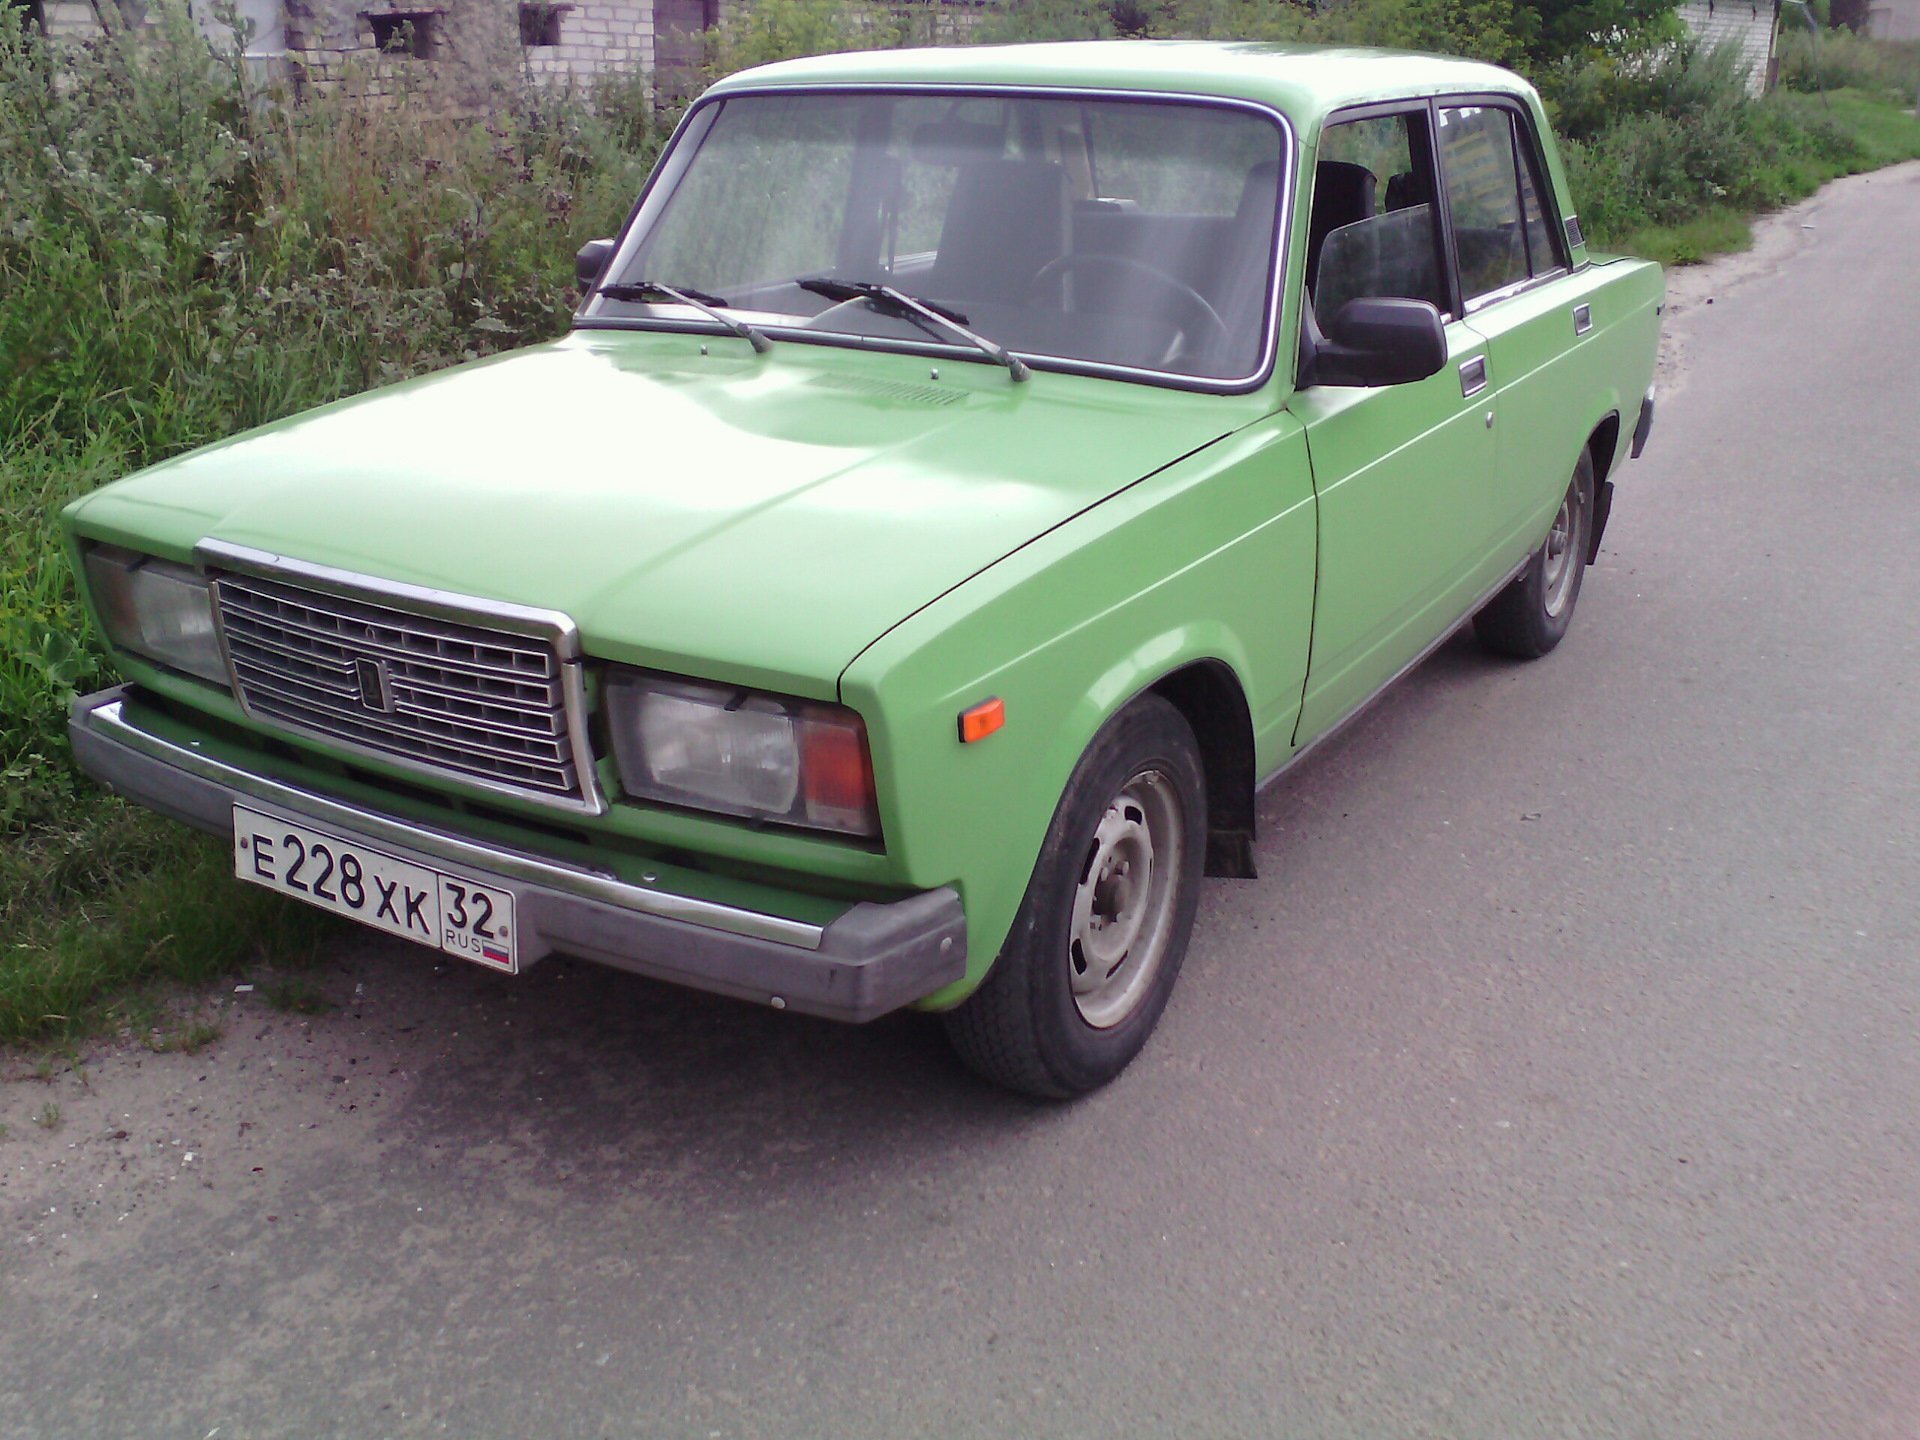 Купить Машину В Новосибирске Семерку На Авито